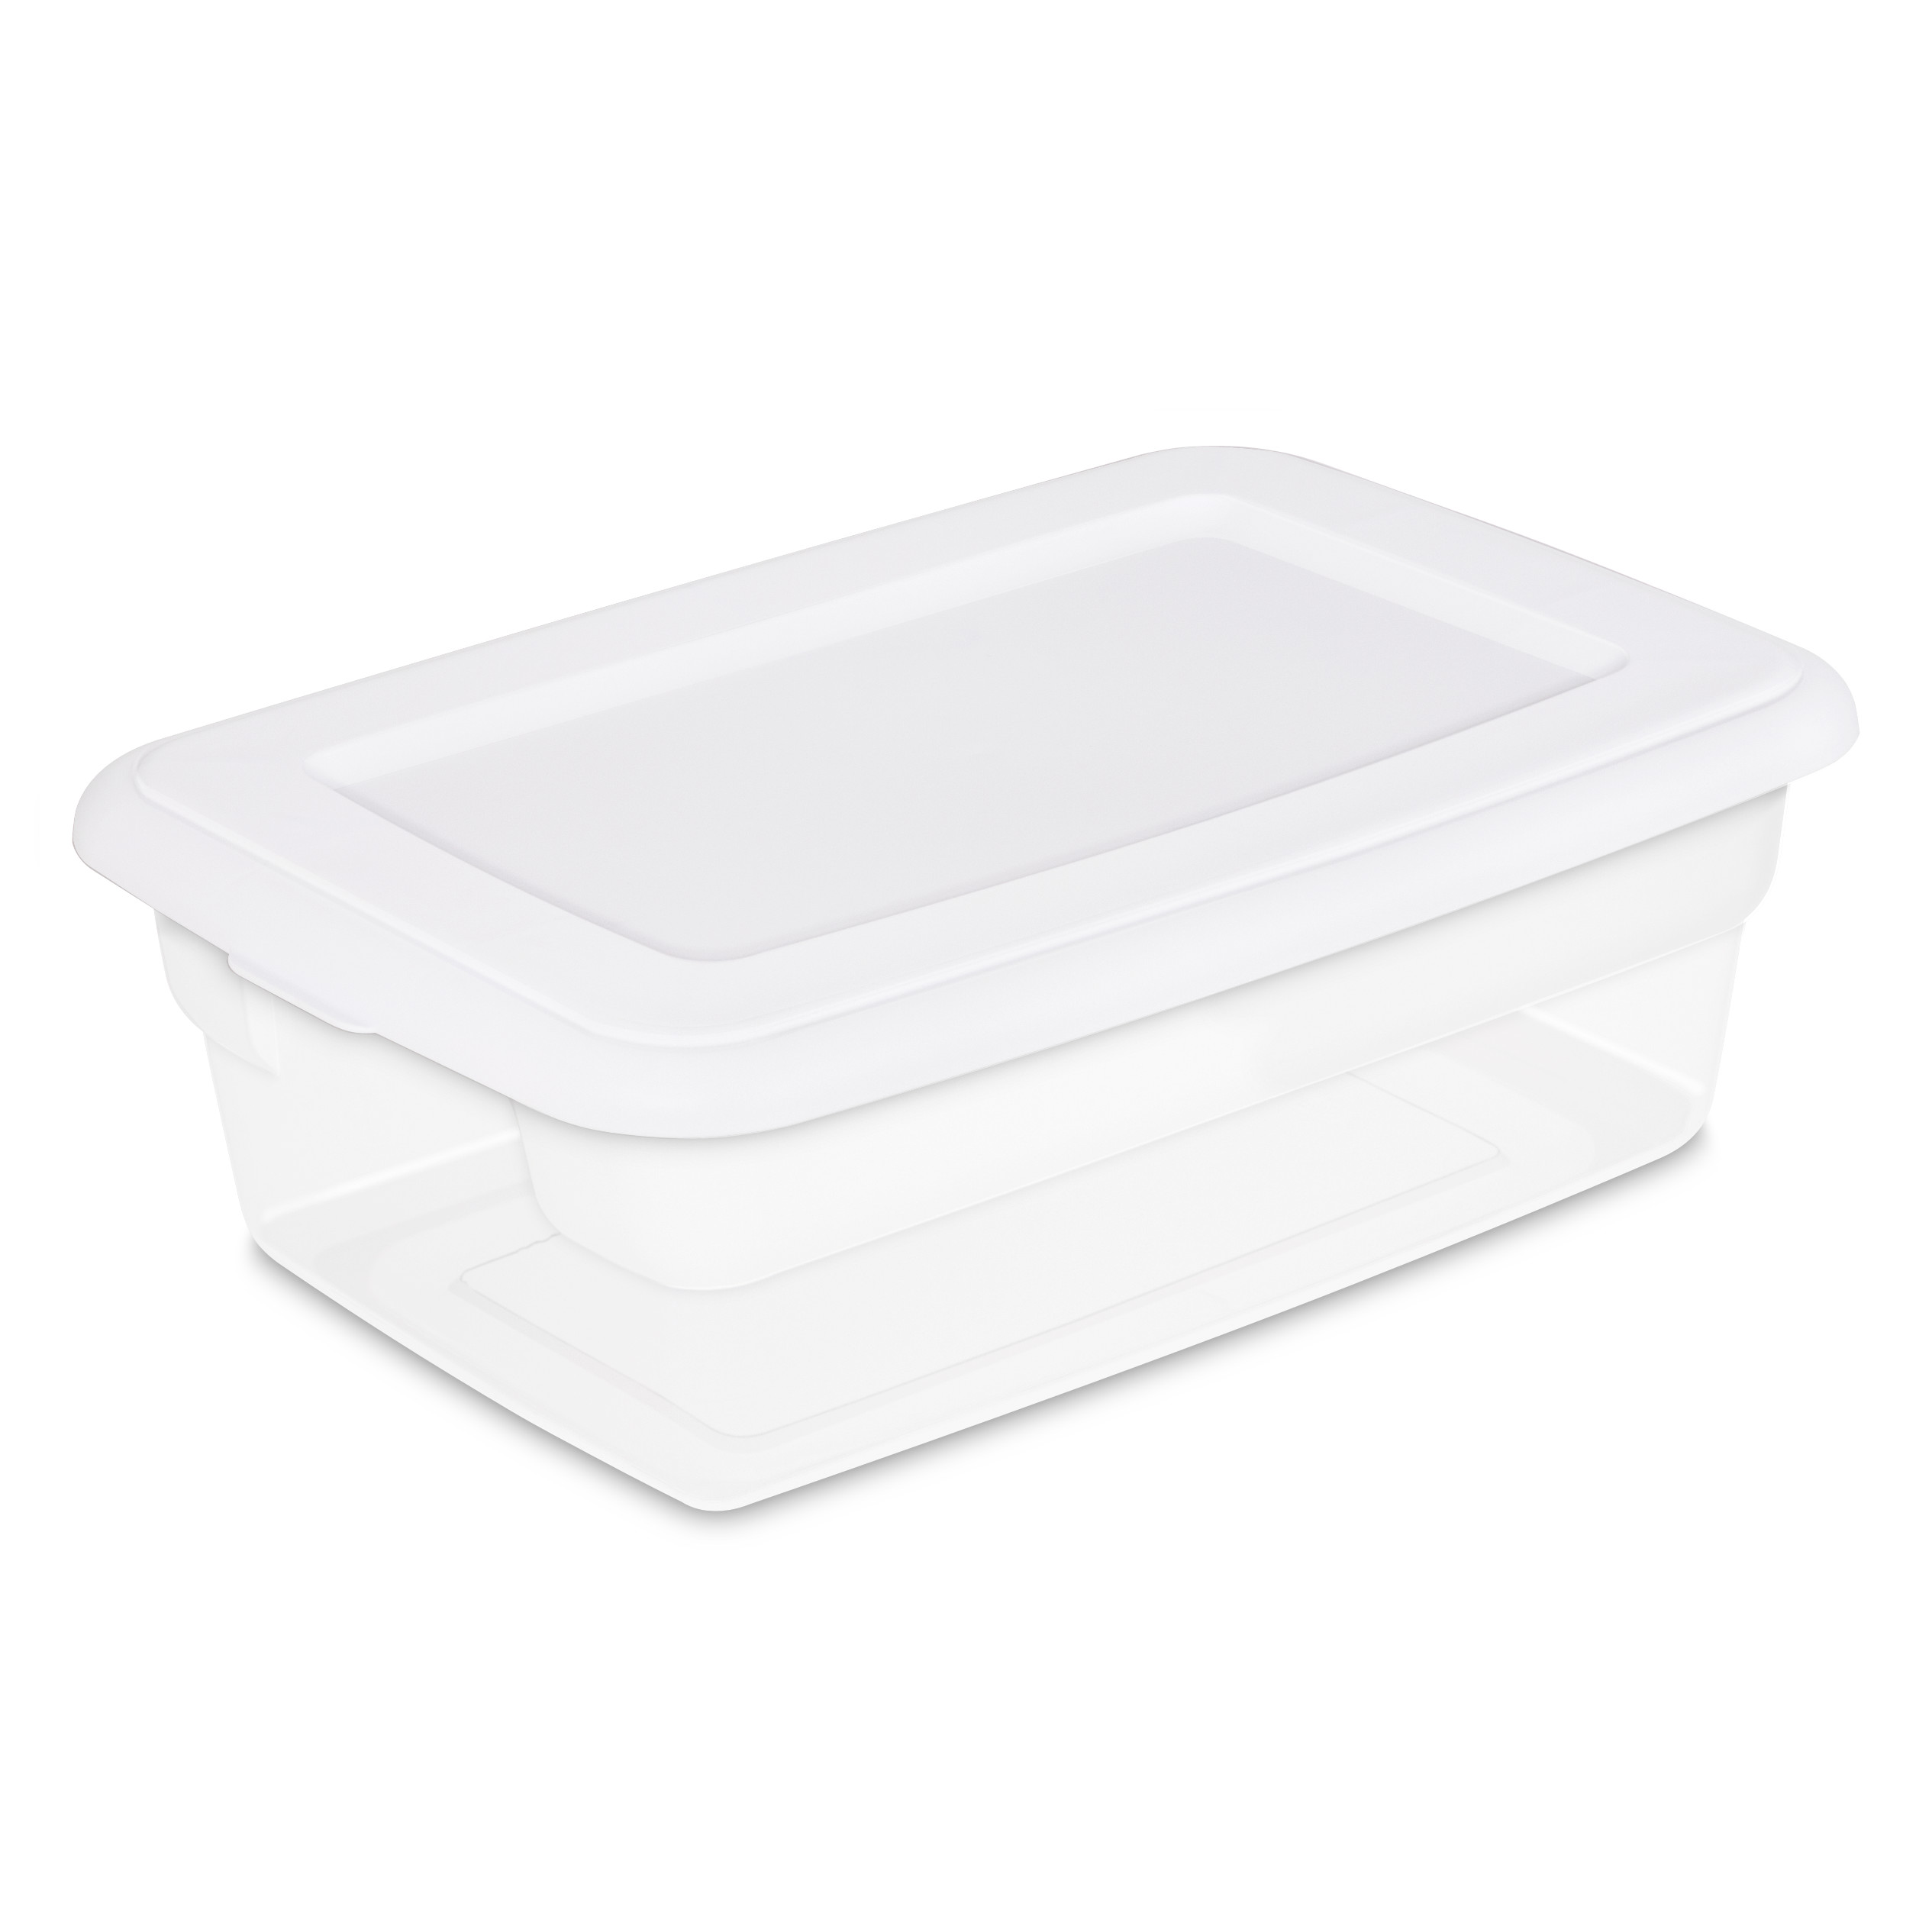 Sterilite 12 Qt. Storage Box Plastic, White, Set of 15 - image 3 of 9